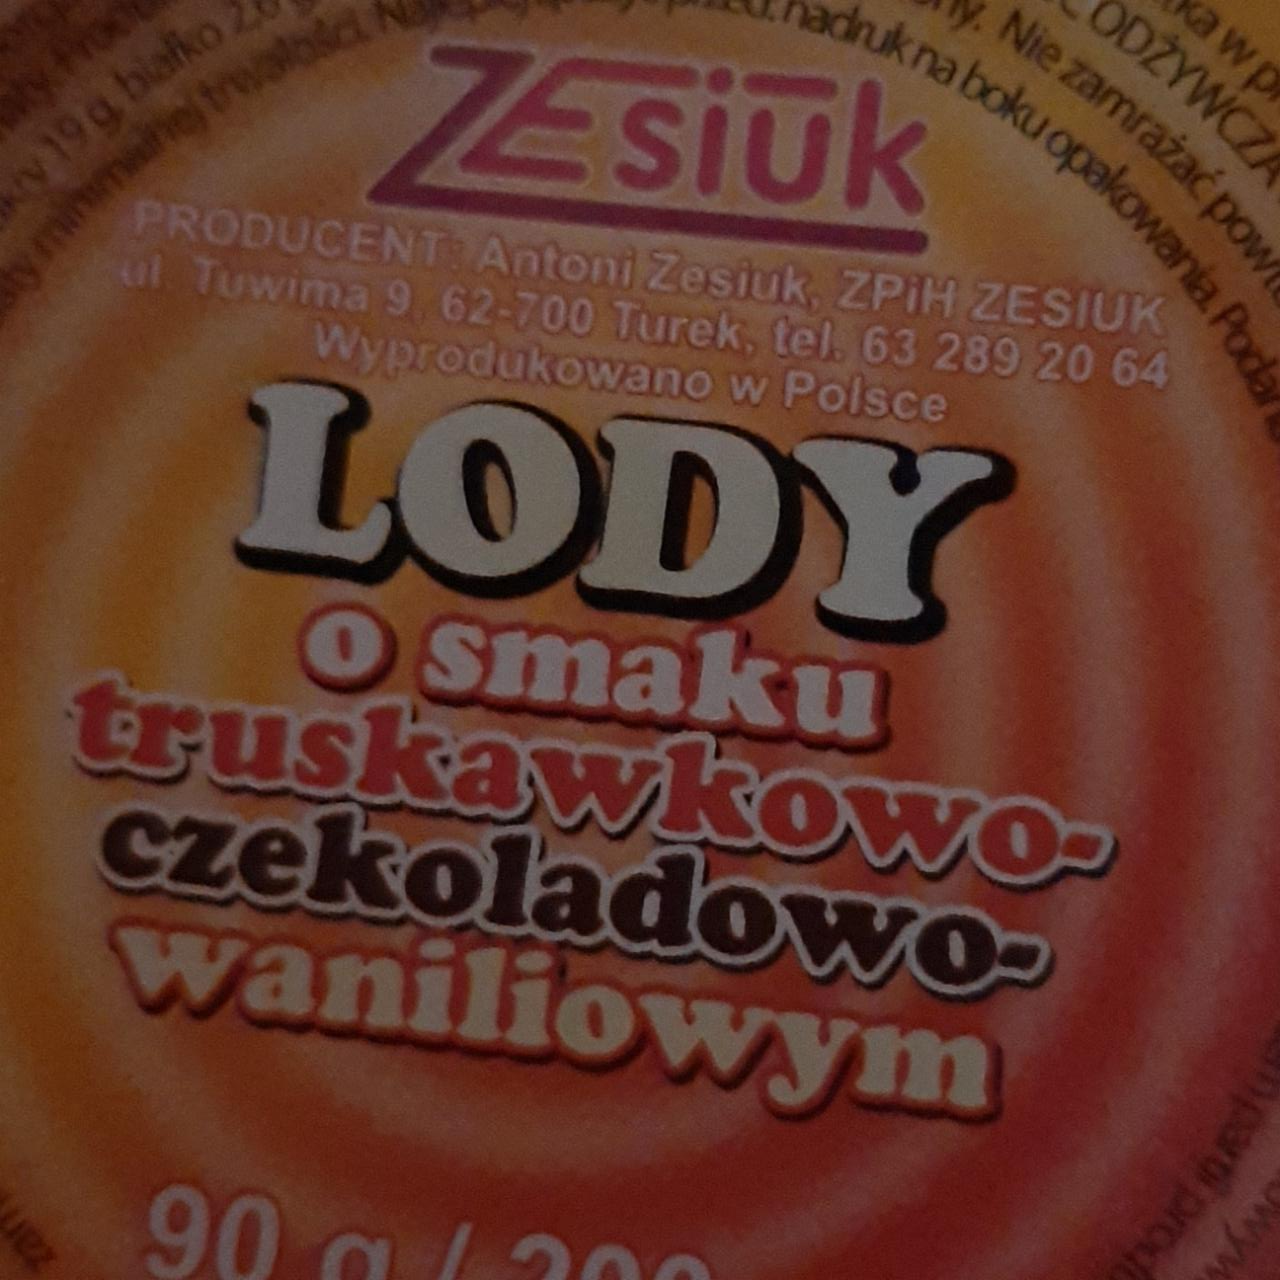 Zdjęcia - Lody o smaku truskawkowo-czekoladowo-waniliowym Zesiuk